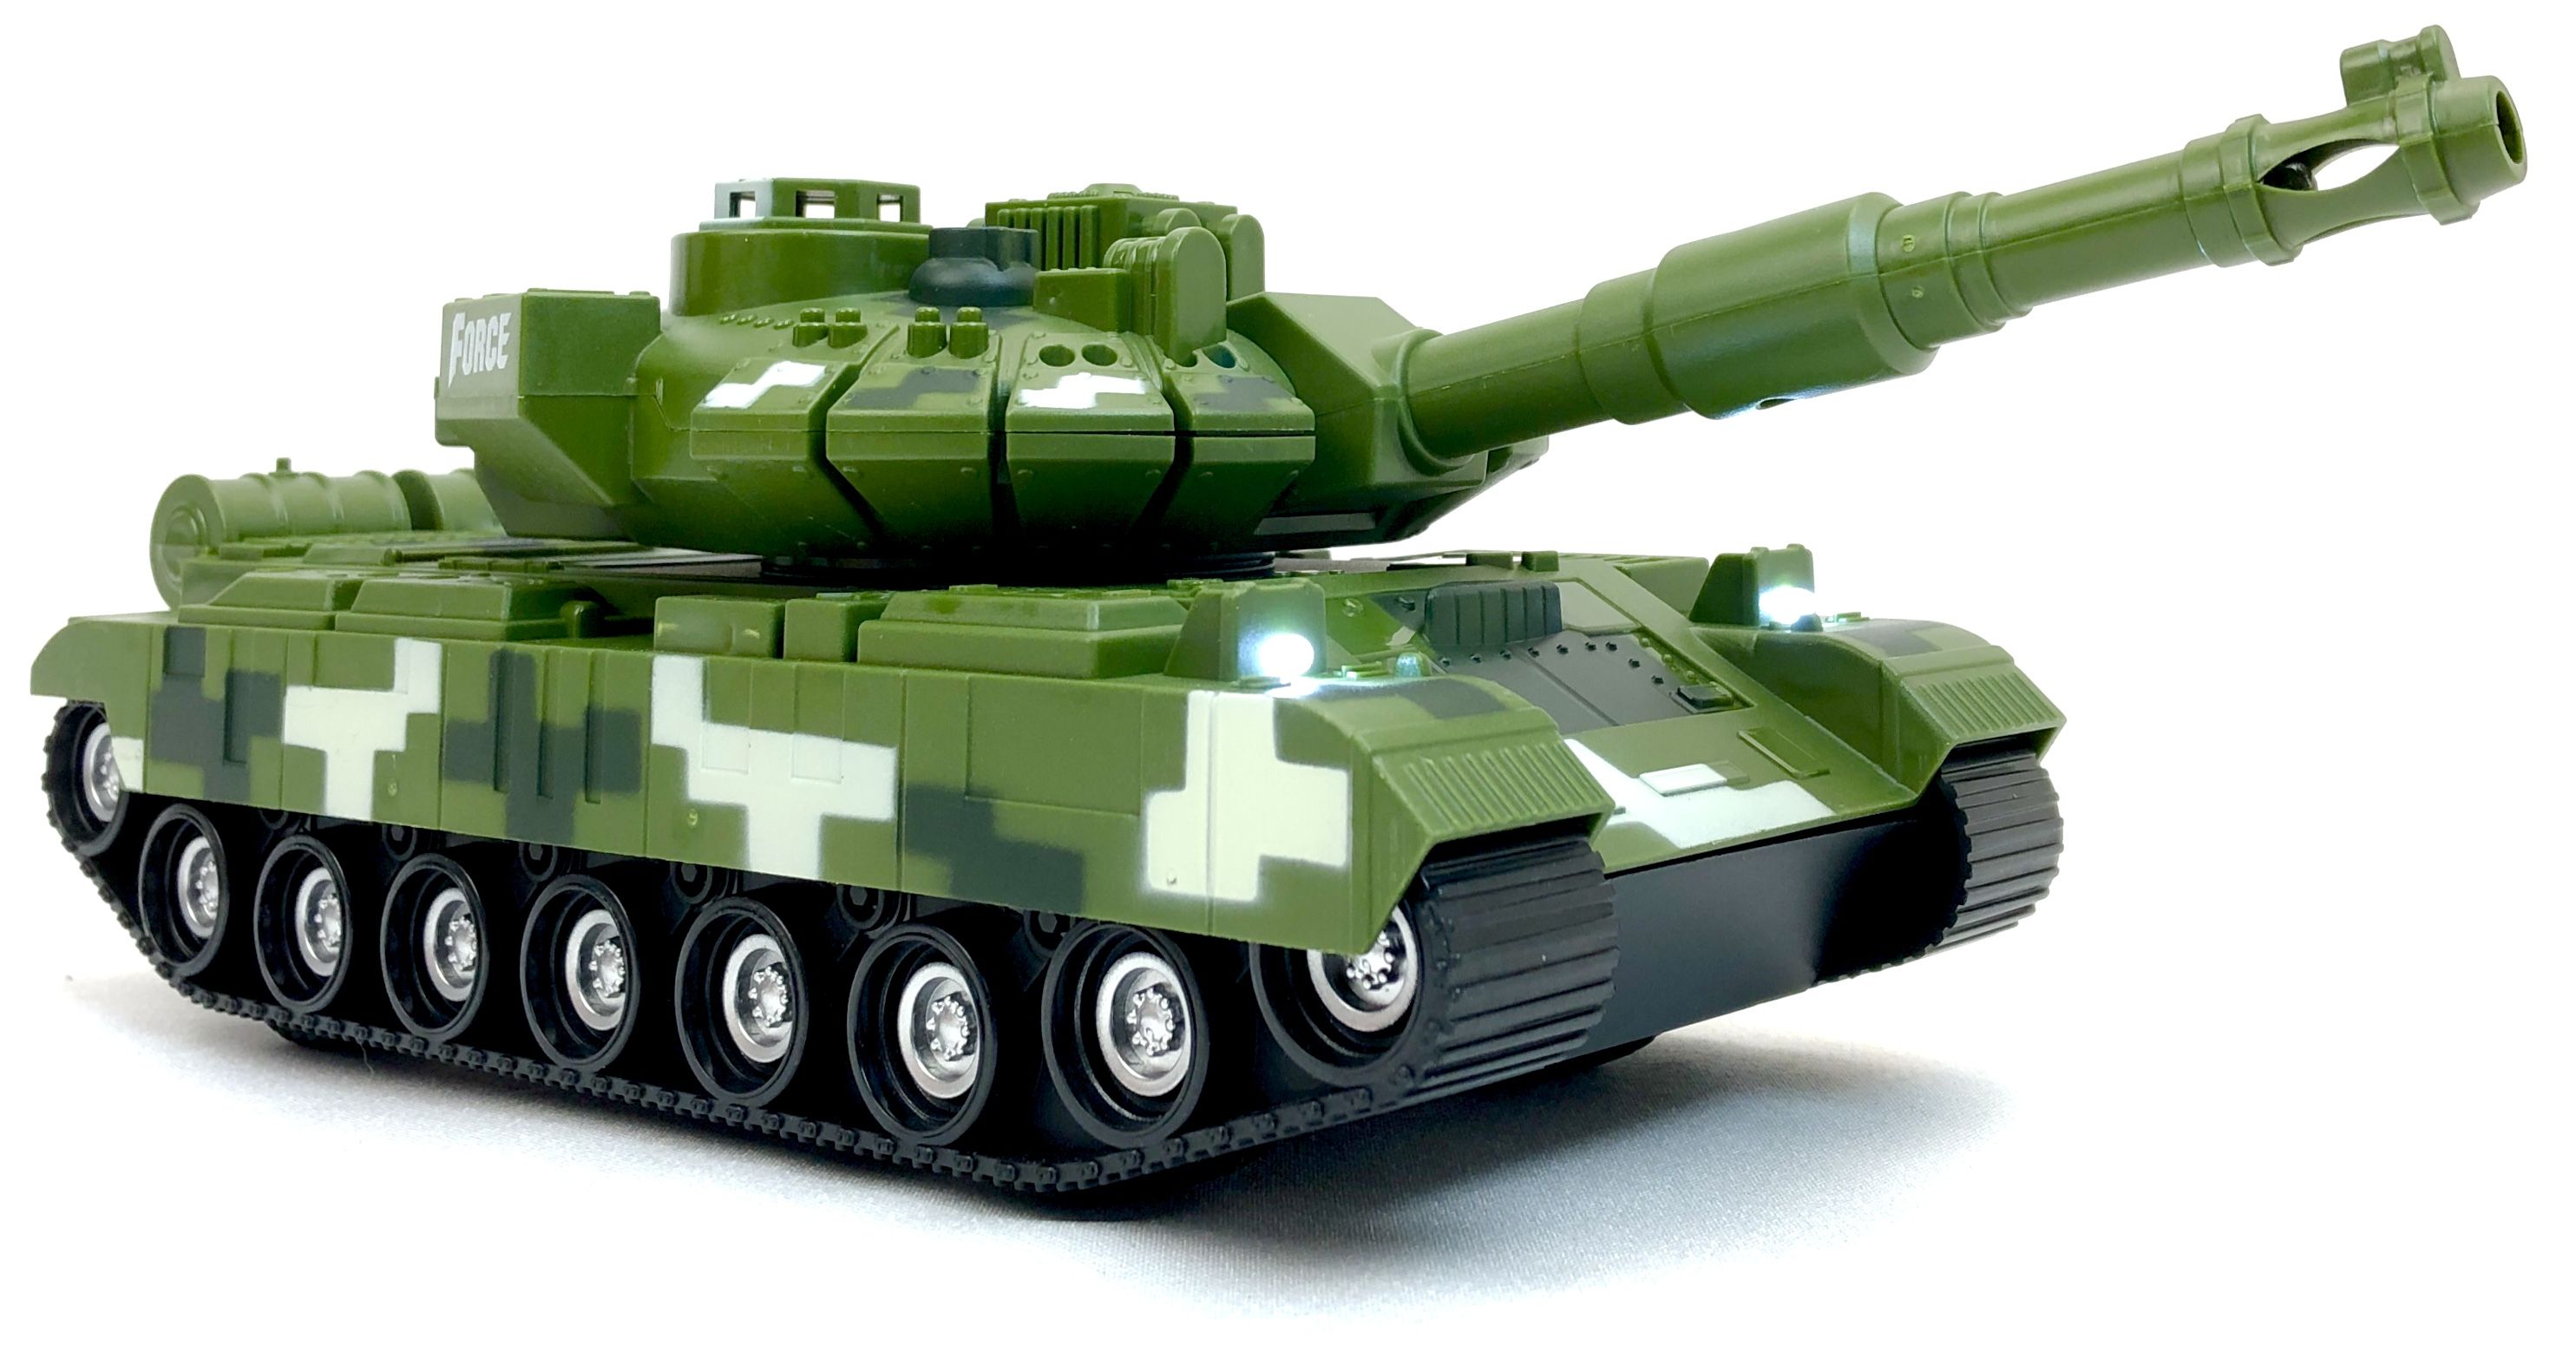 Радиоуправляемый боевой танк PLAYSMART Tank Assault, 1:16 1 43 atlas dinky 805 truck unic multibenne marrel and tank primagaz diecast toys limited edition collection